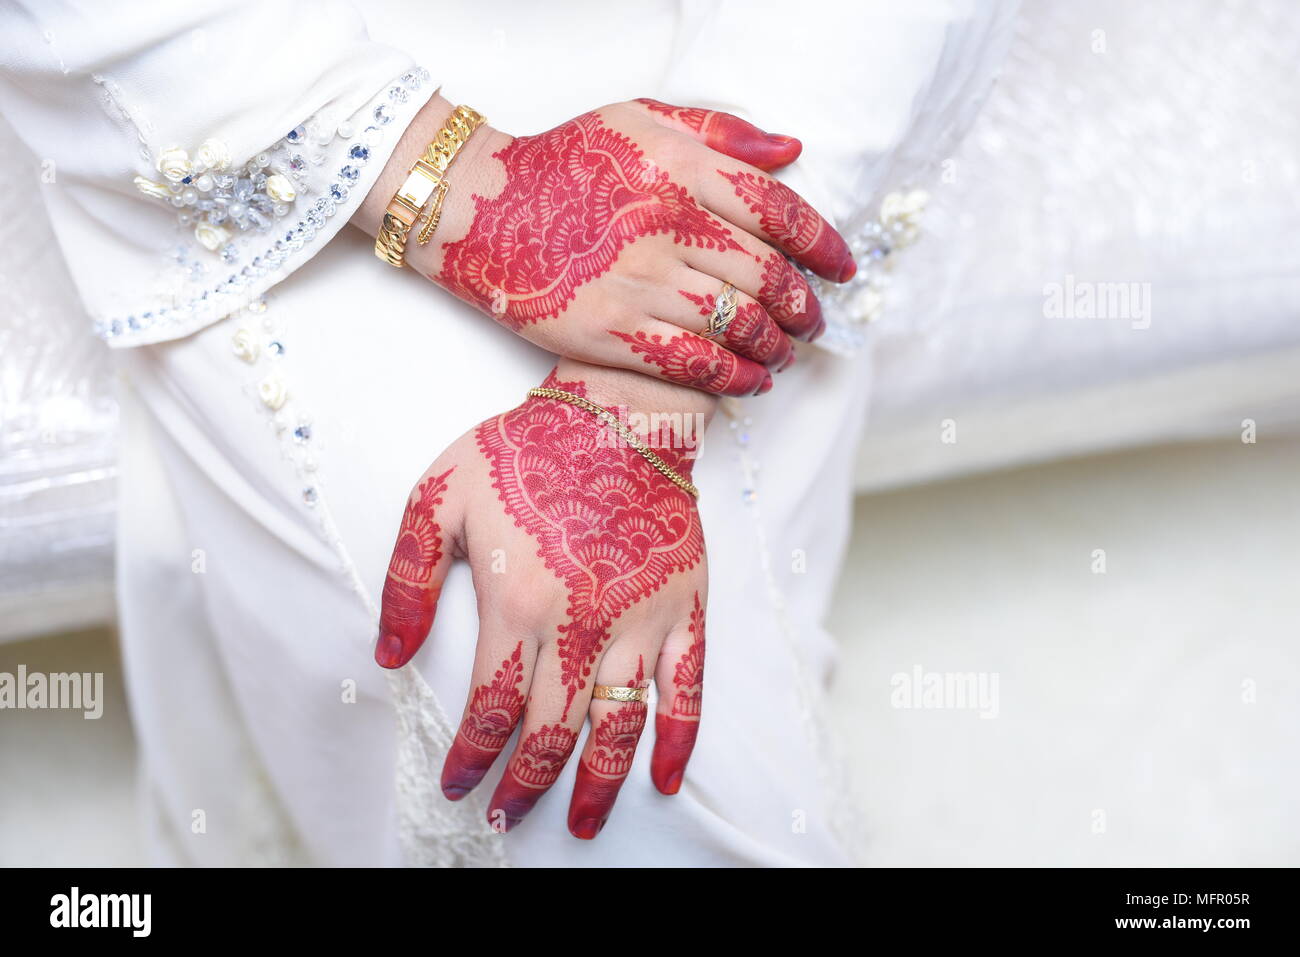 Certains des mon image de l'épouse d'être. local C'est mariage ou un mariage de style malaisien dans la culture de la Malaisie. Banque D'Images